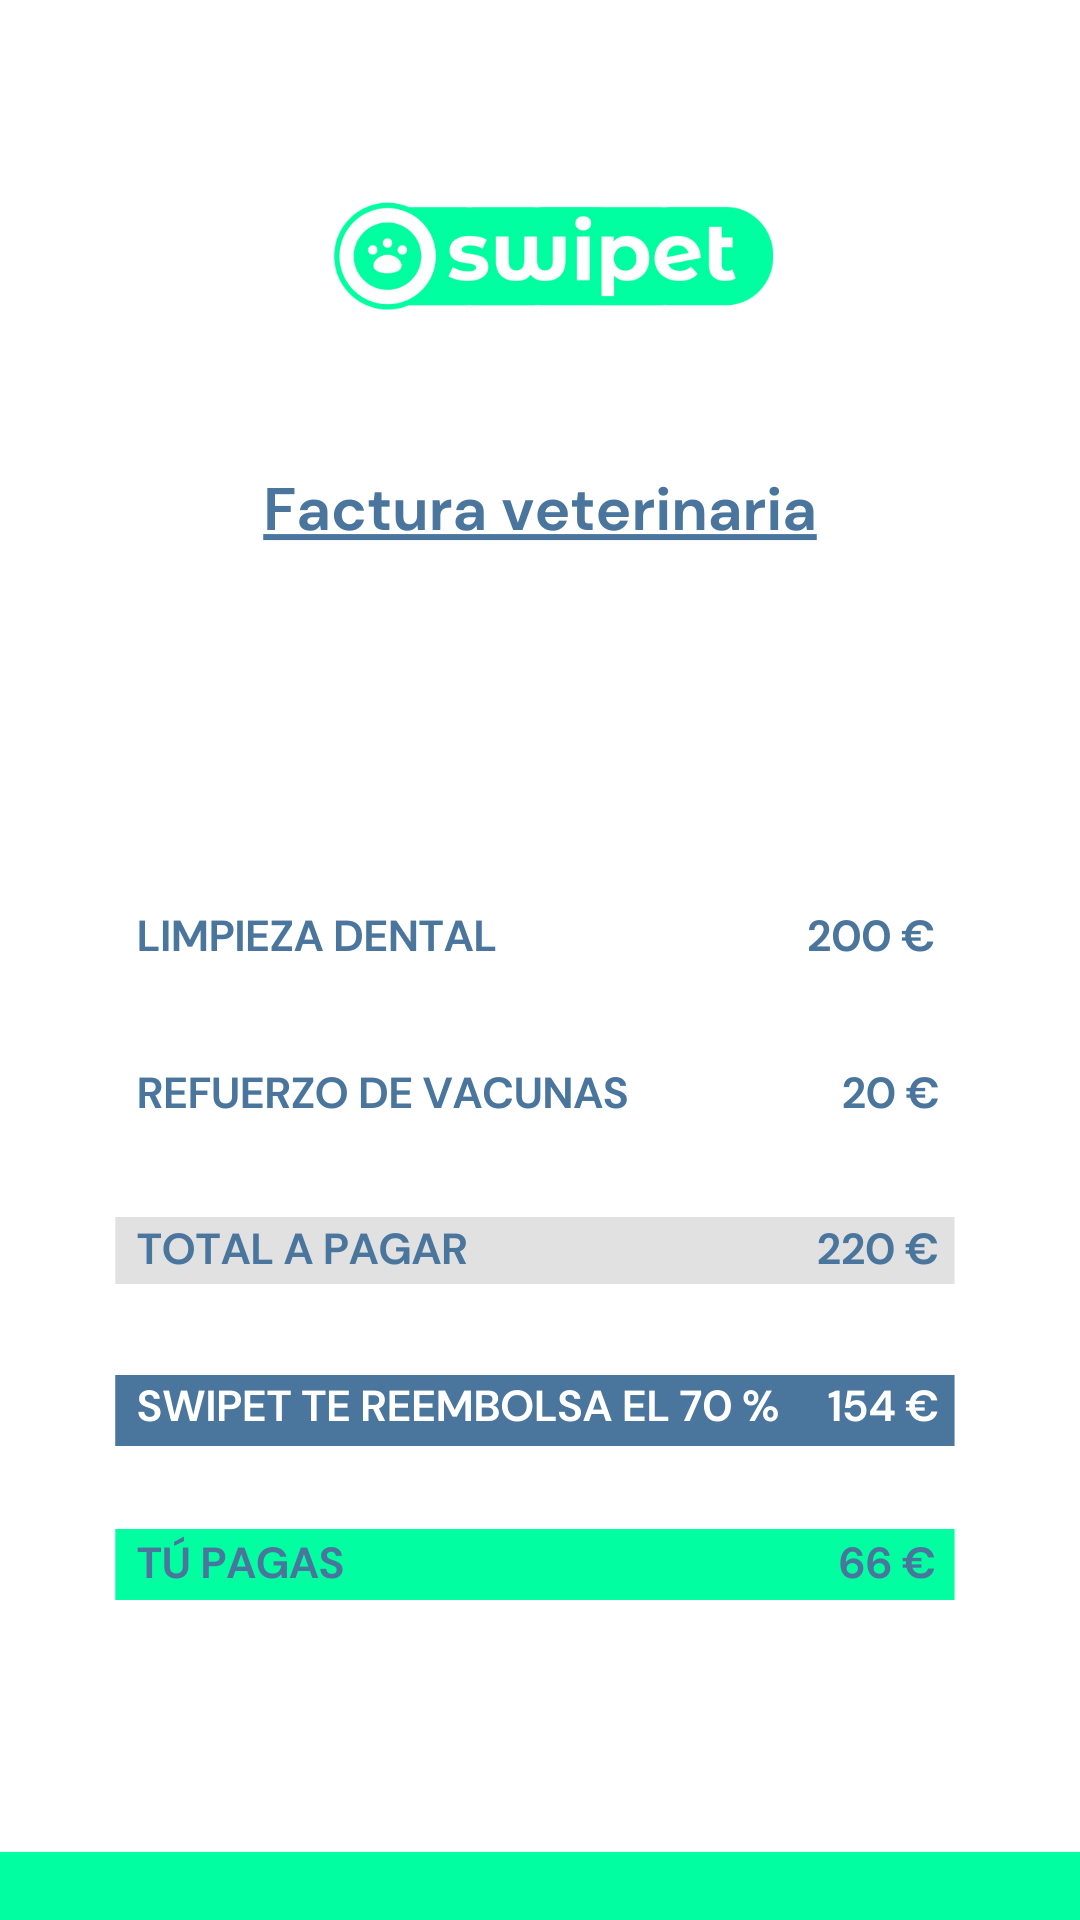 Visita al veterinario limpieza dental refuerzo de vacunas total a pagar swipet te reembolsa el 70% tú pagas